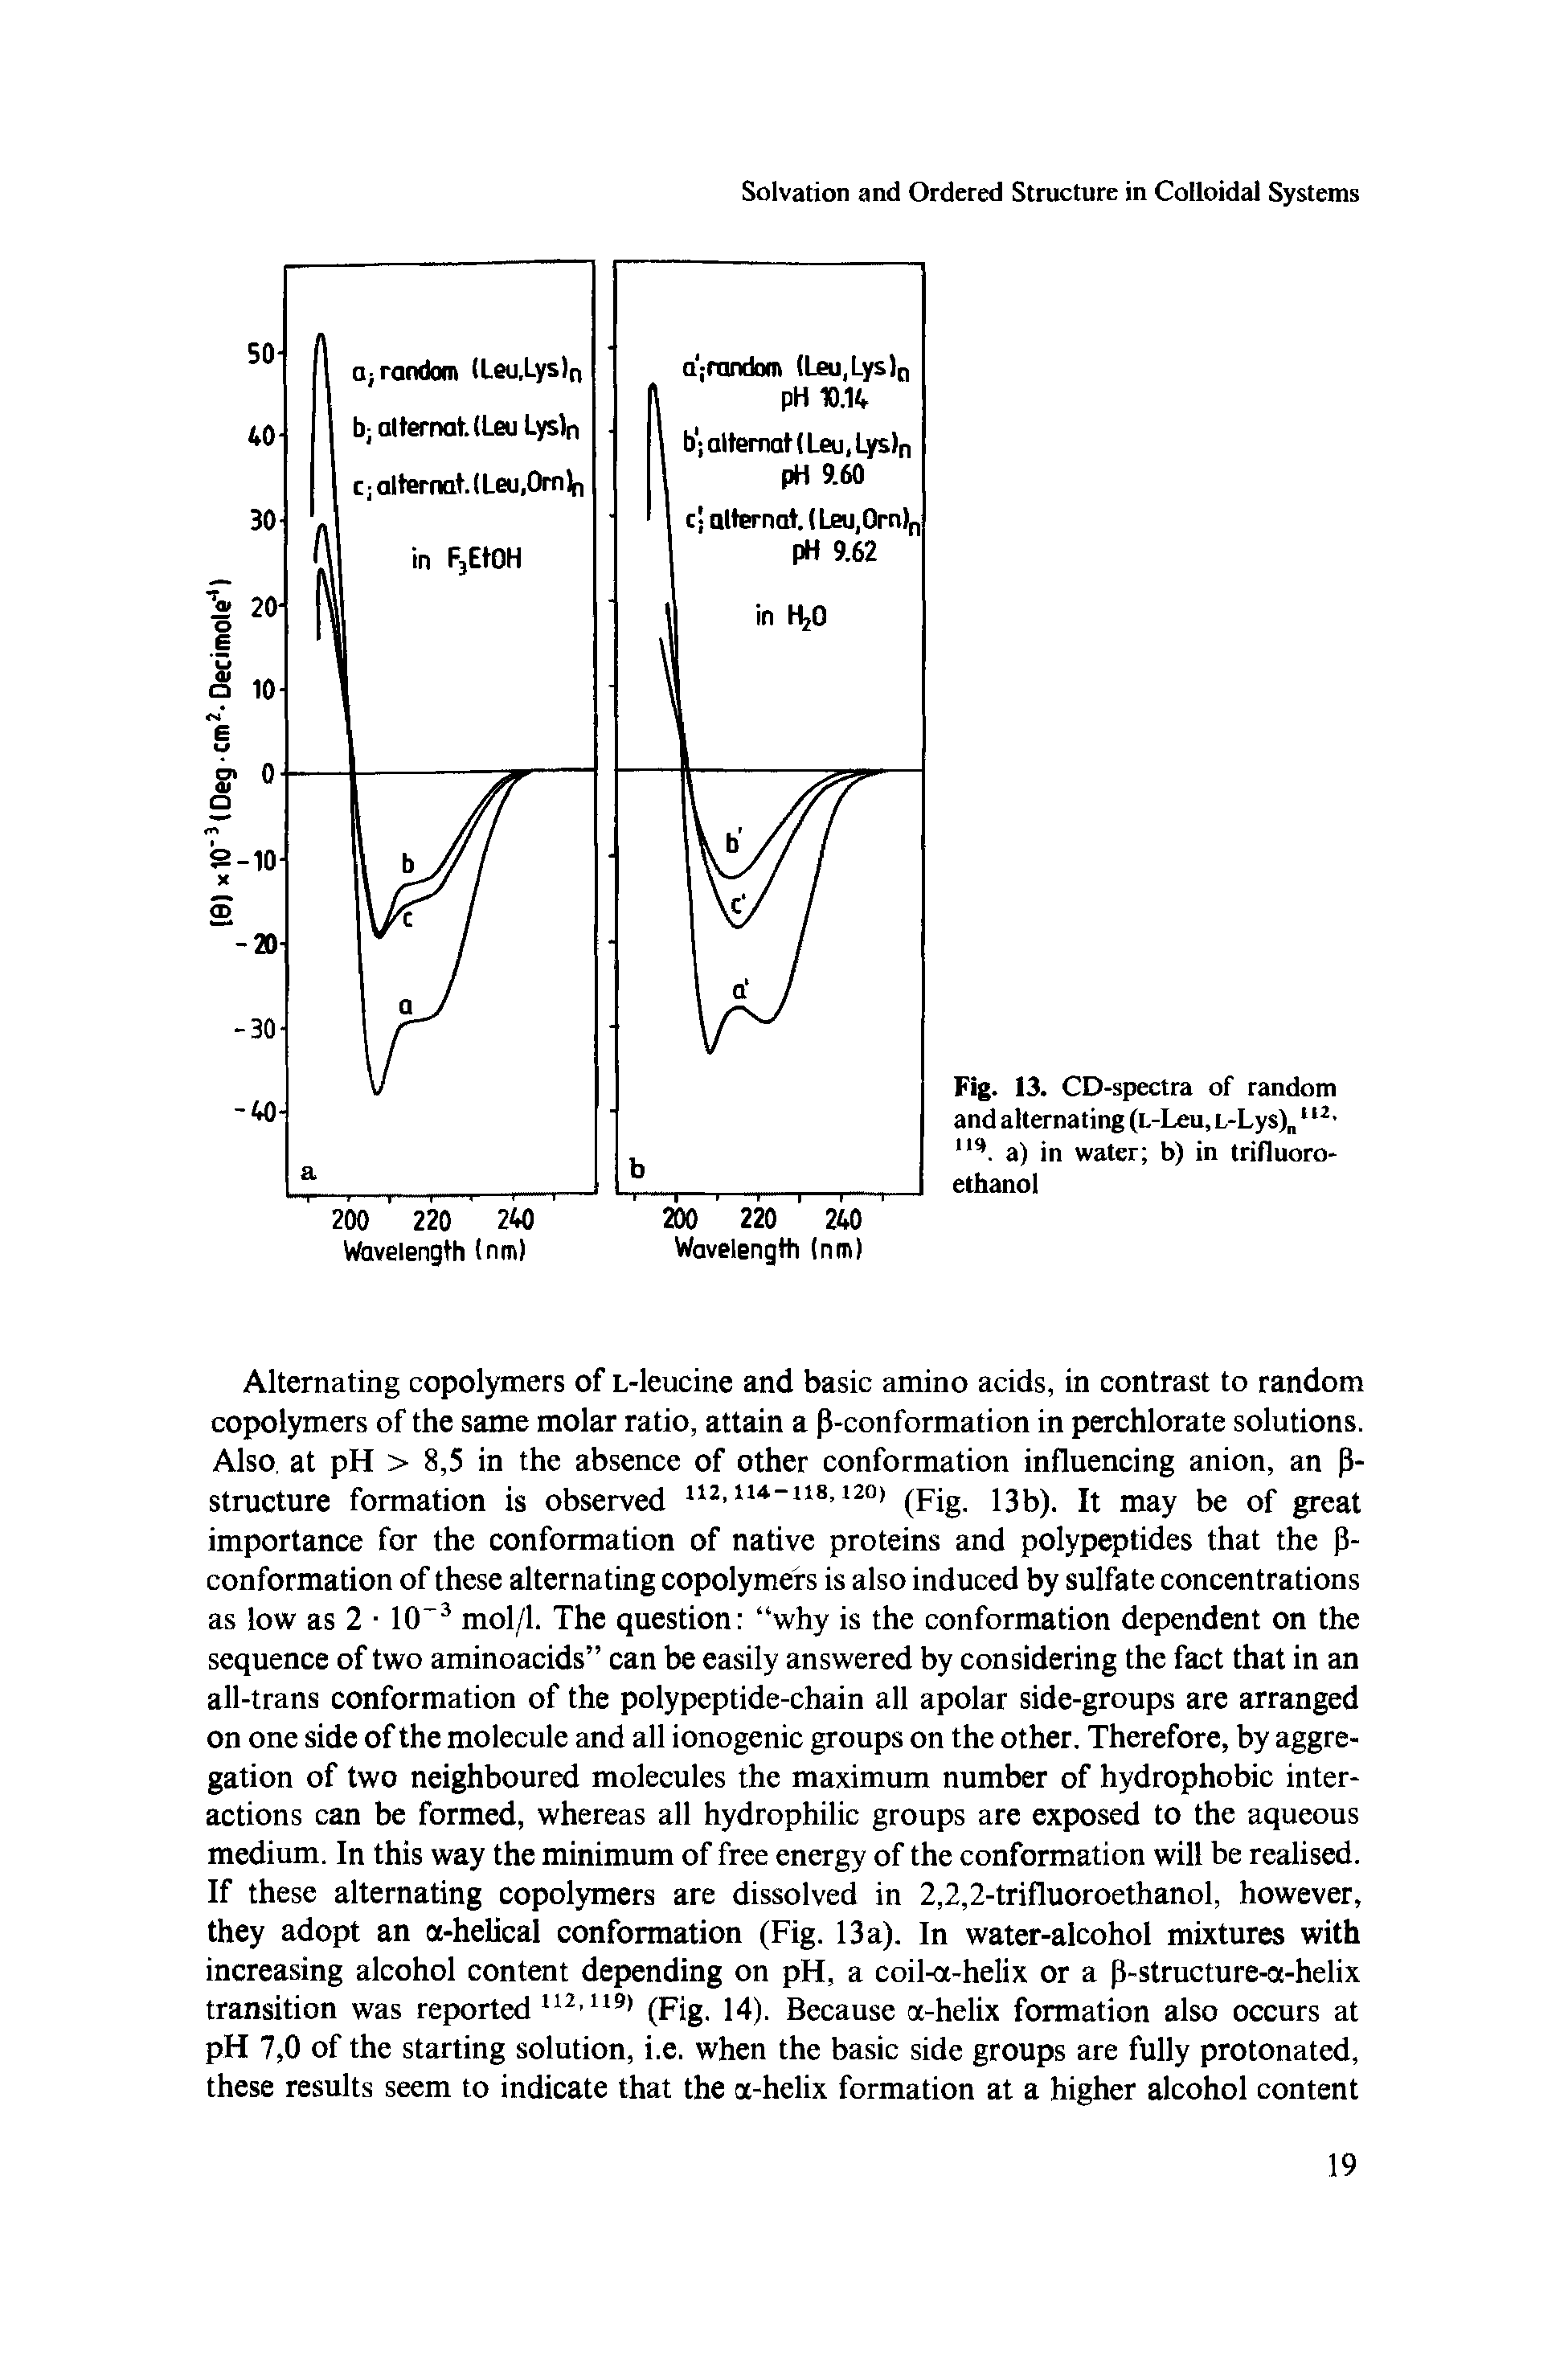 Fig. 13. CD-spectra of random and alternating (L-Leu, L-Lys) u2, u(. a) in water b) in trifluoro-ethanol...